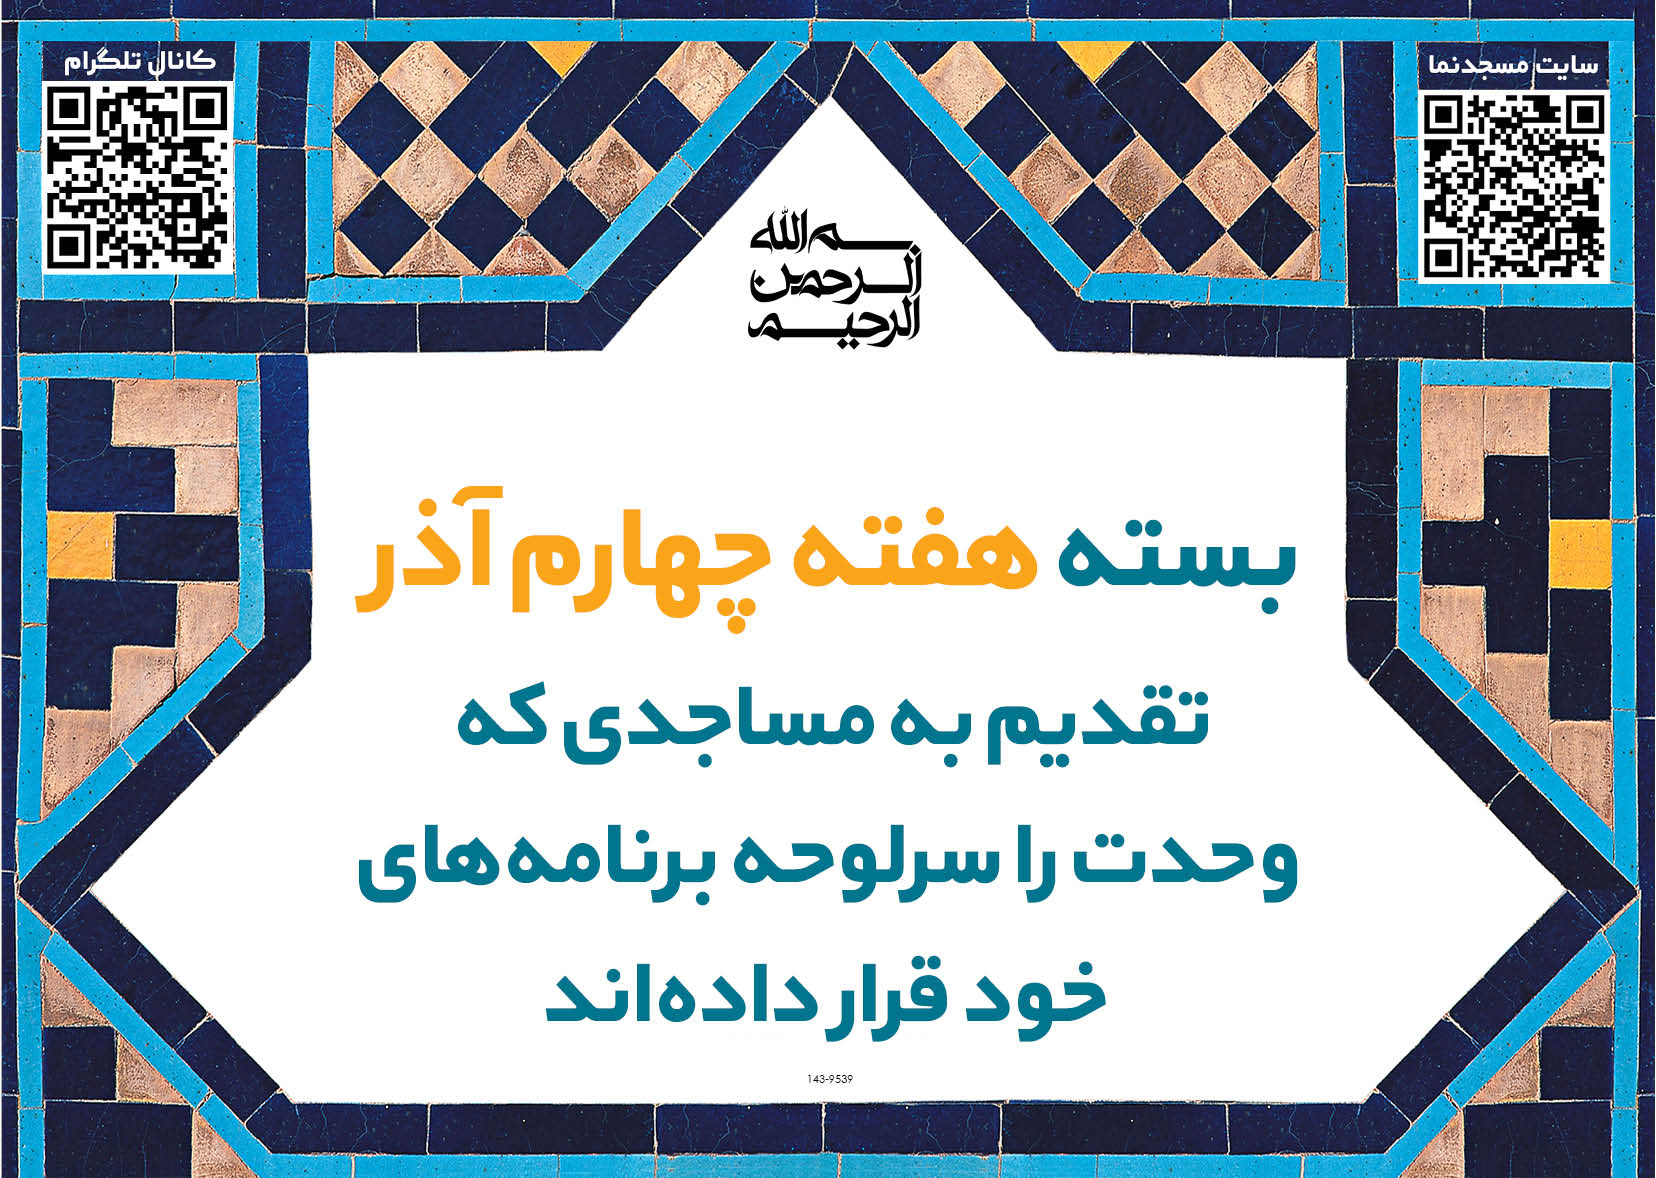 حسینیه وفرهنگسرای سیدالشهداء